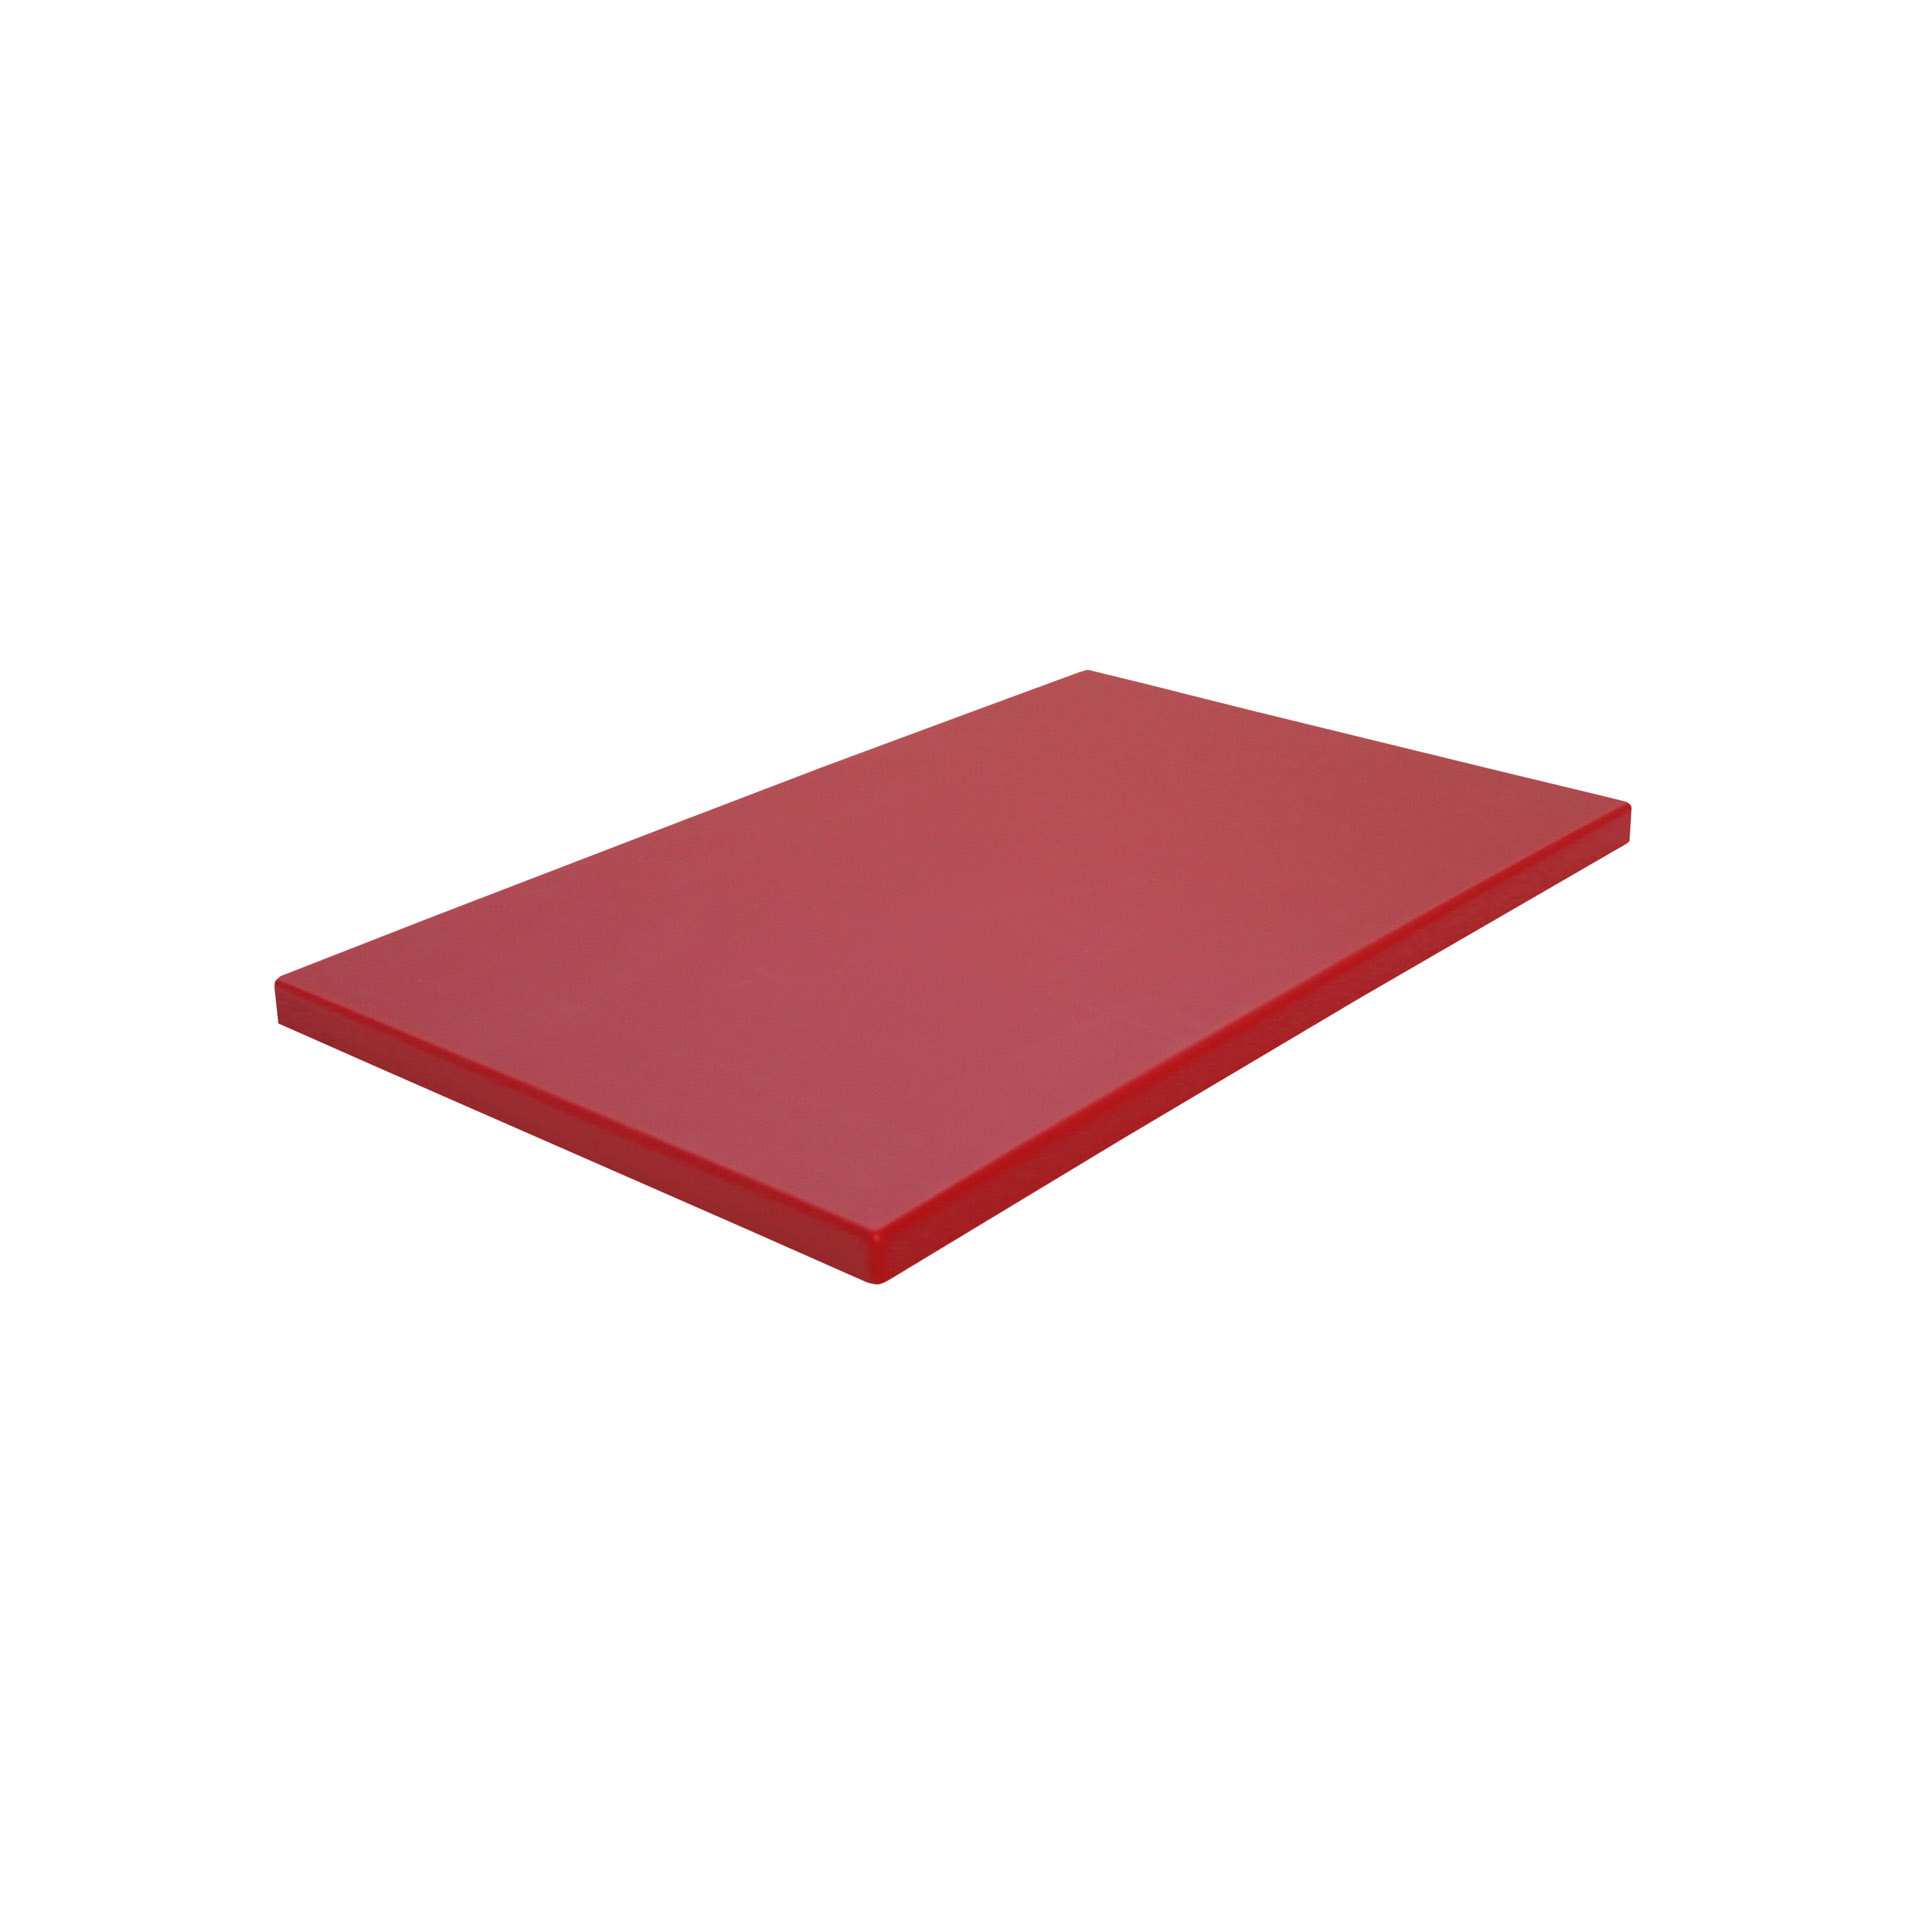 GN-Schneidebrett - mit Füßen - rot - GN 1/1 (530 x 325 mm) - Polyethylen - 228313-C